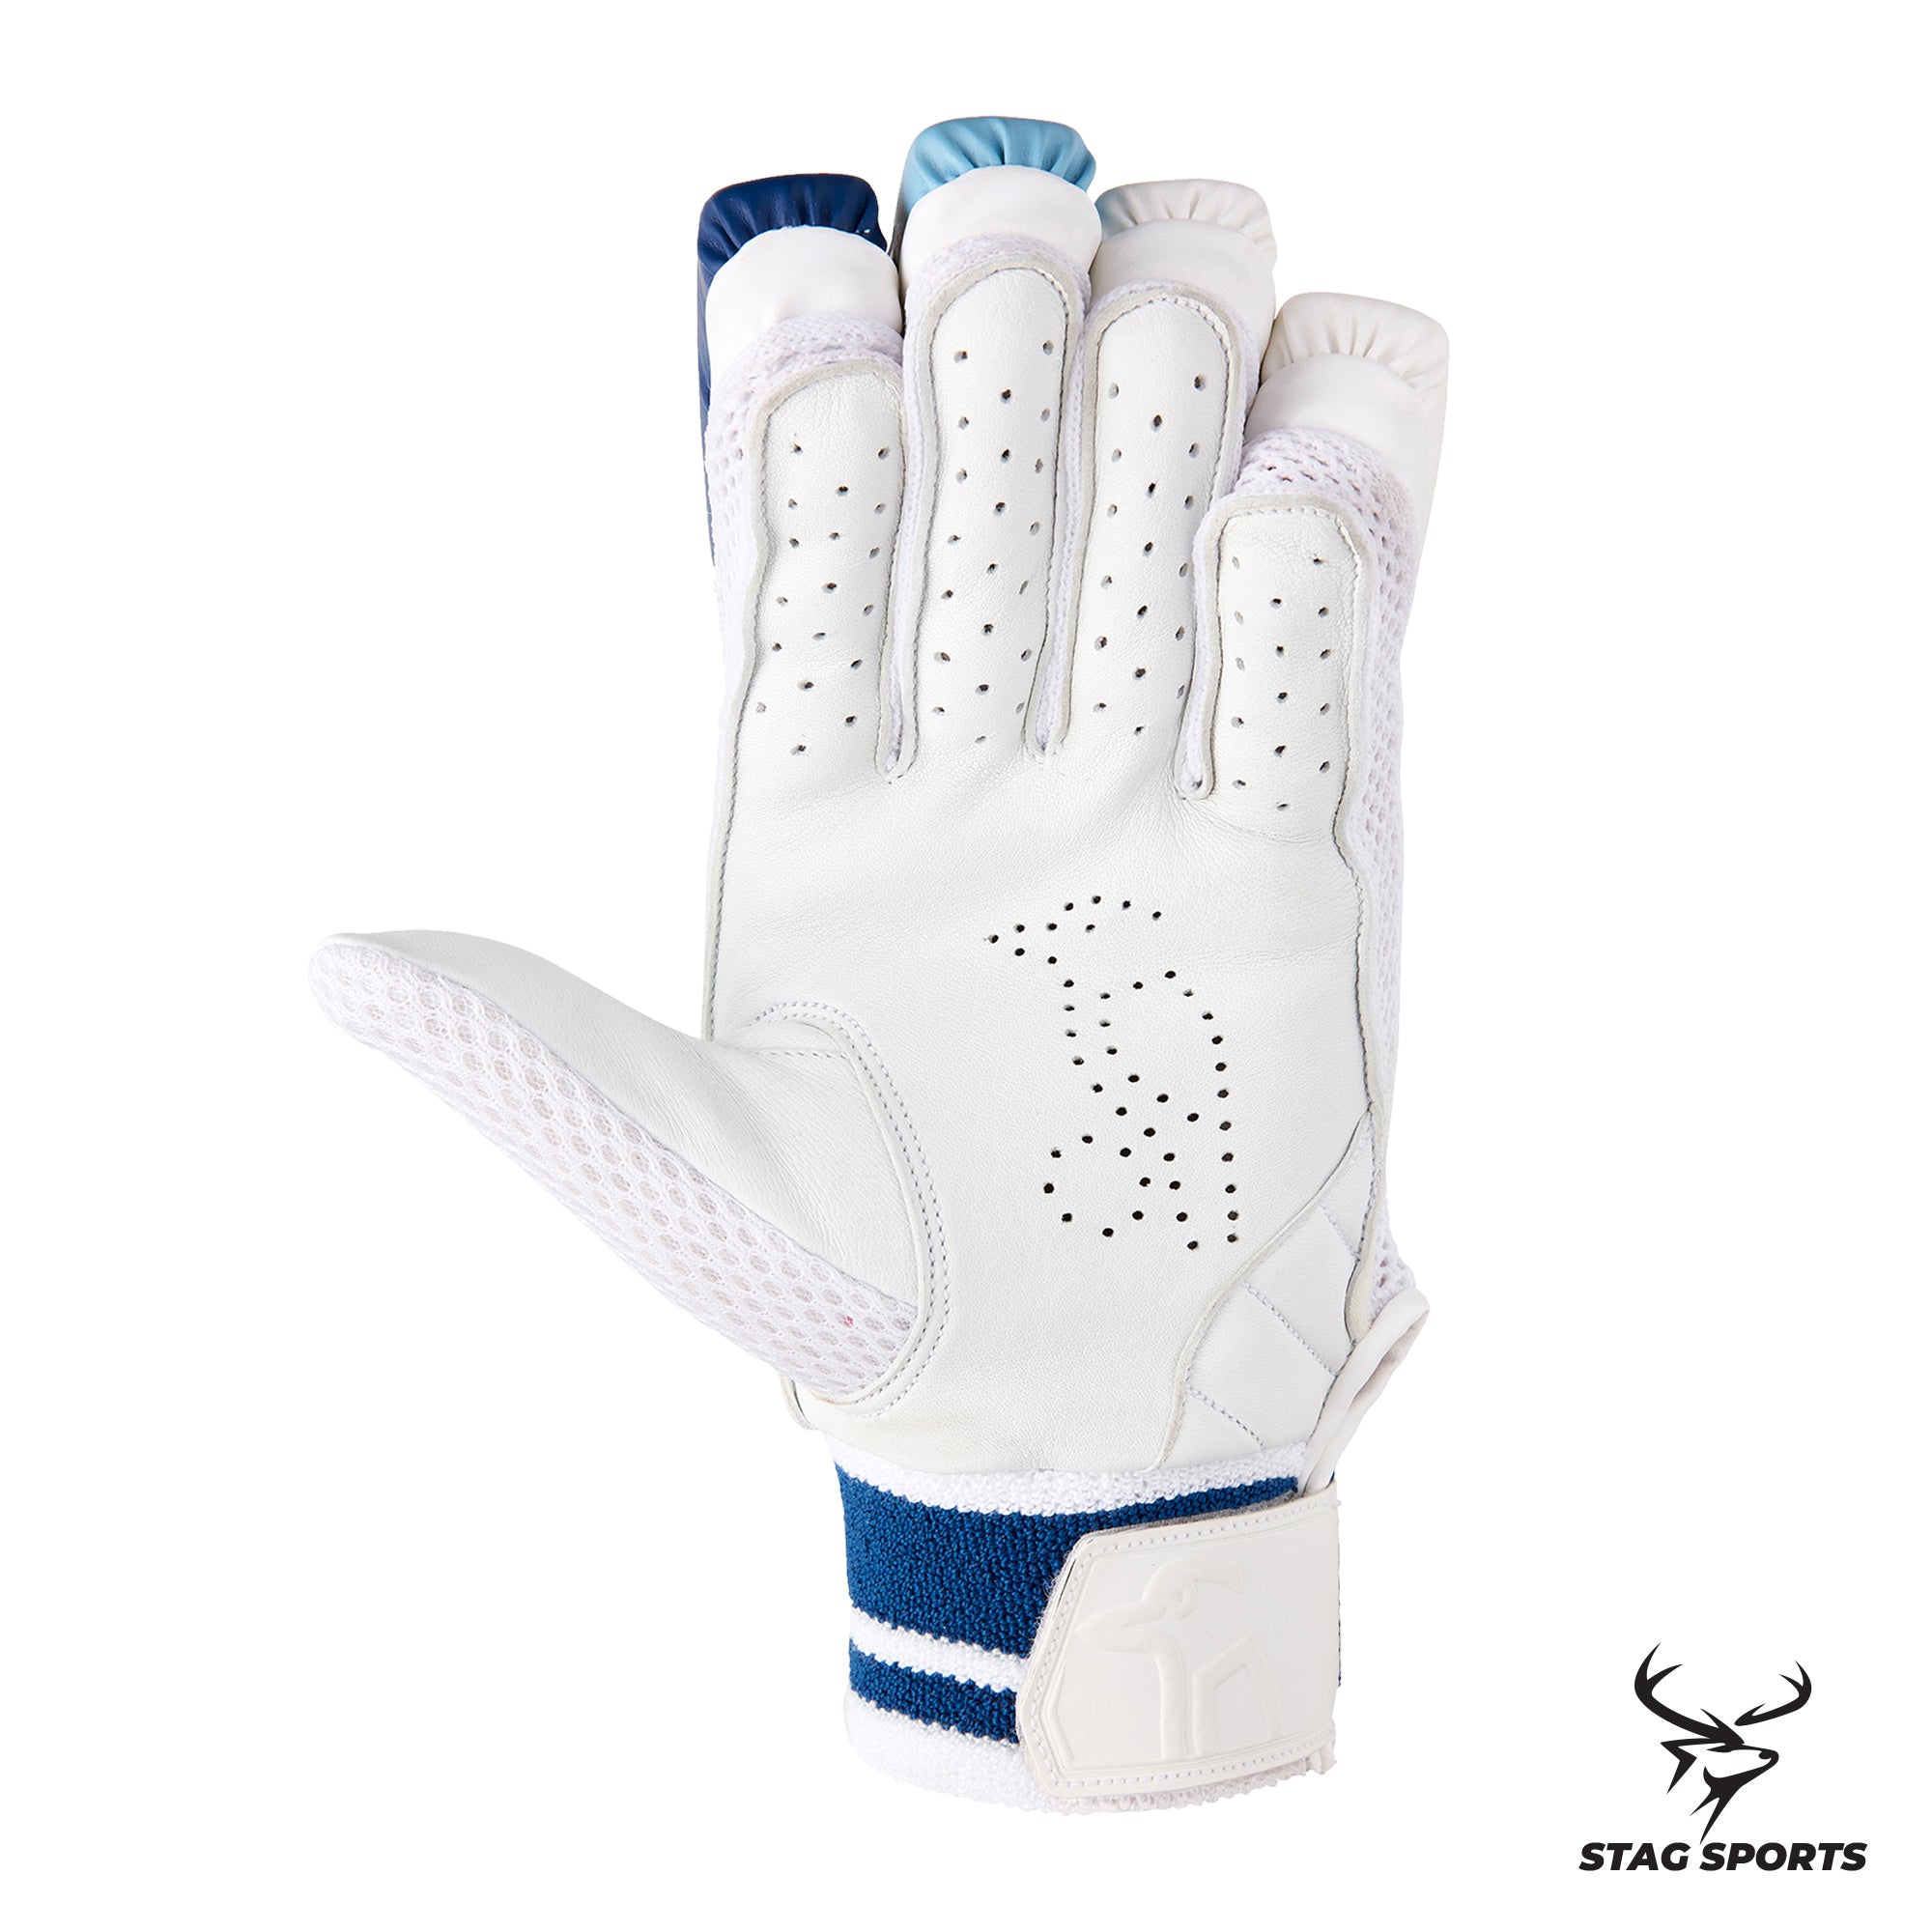 Kookaburra Empower Pro 6.0 Cricket Batting Gloves